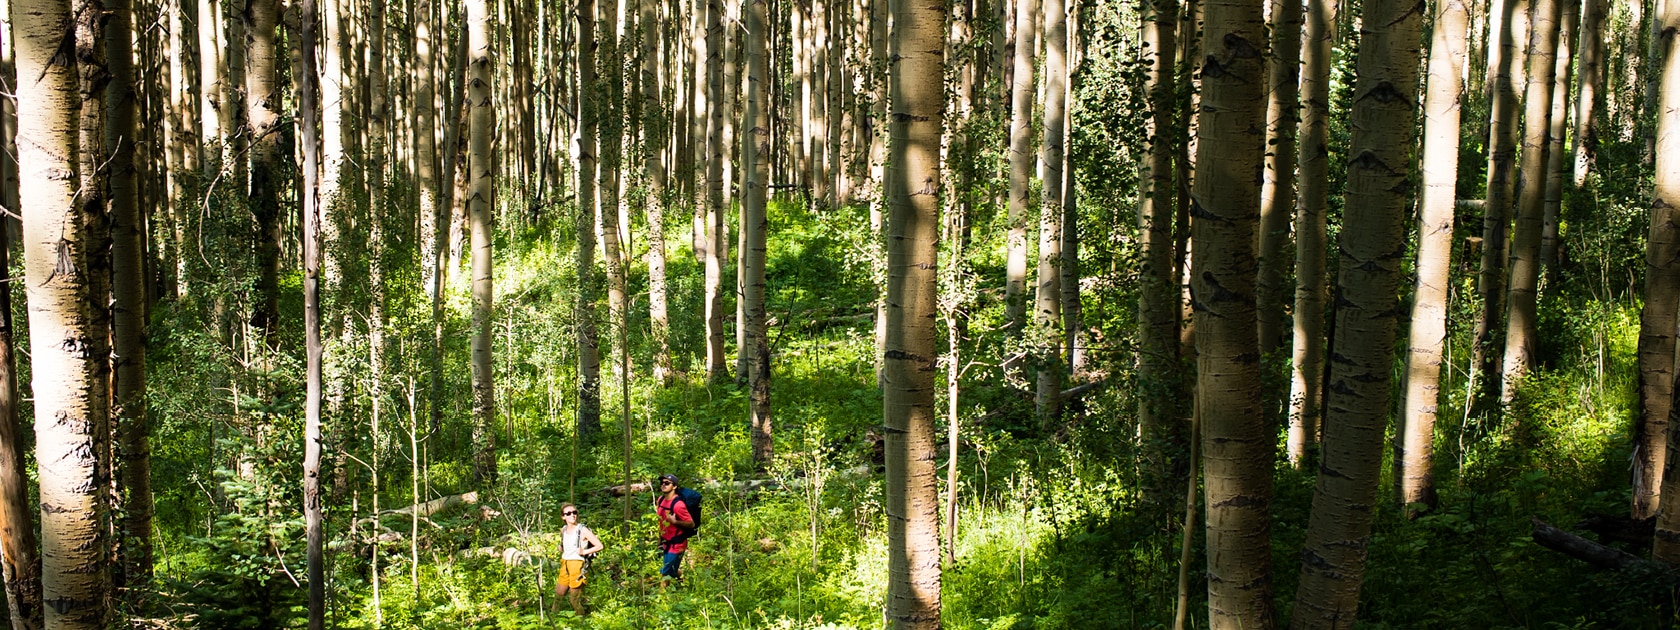 a man and women walk through a green forest